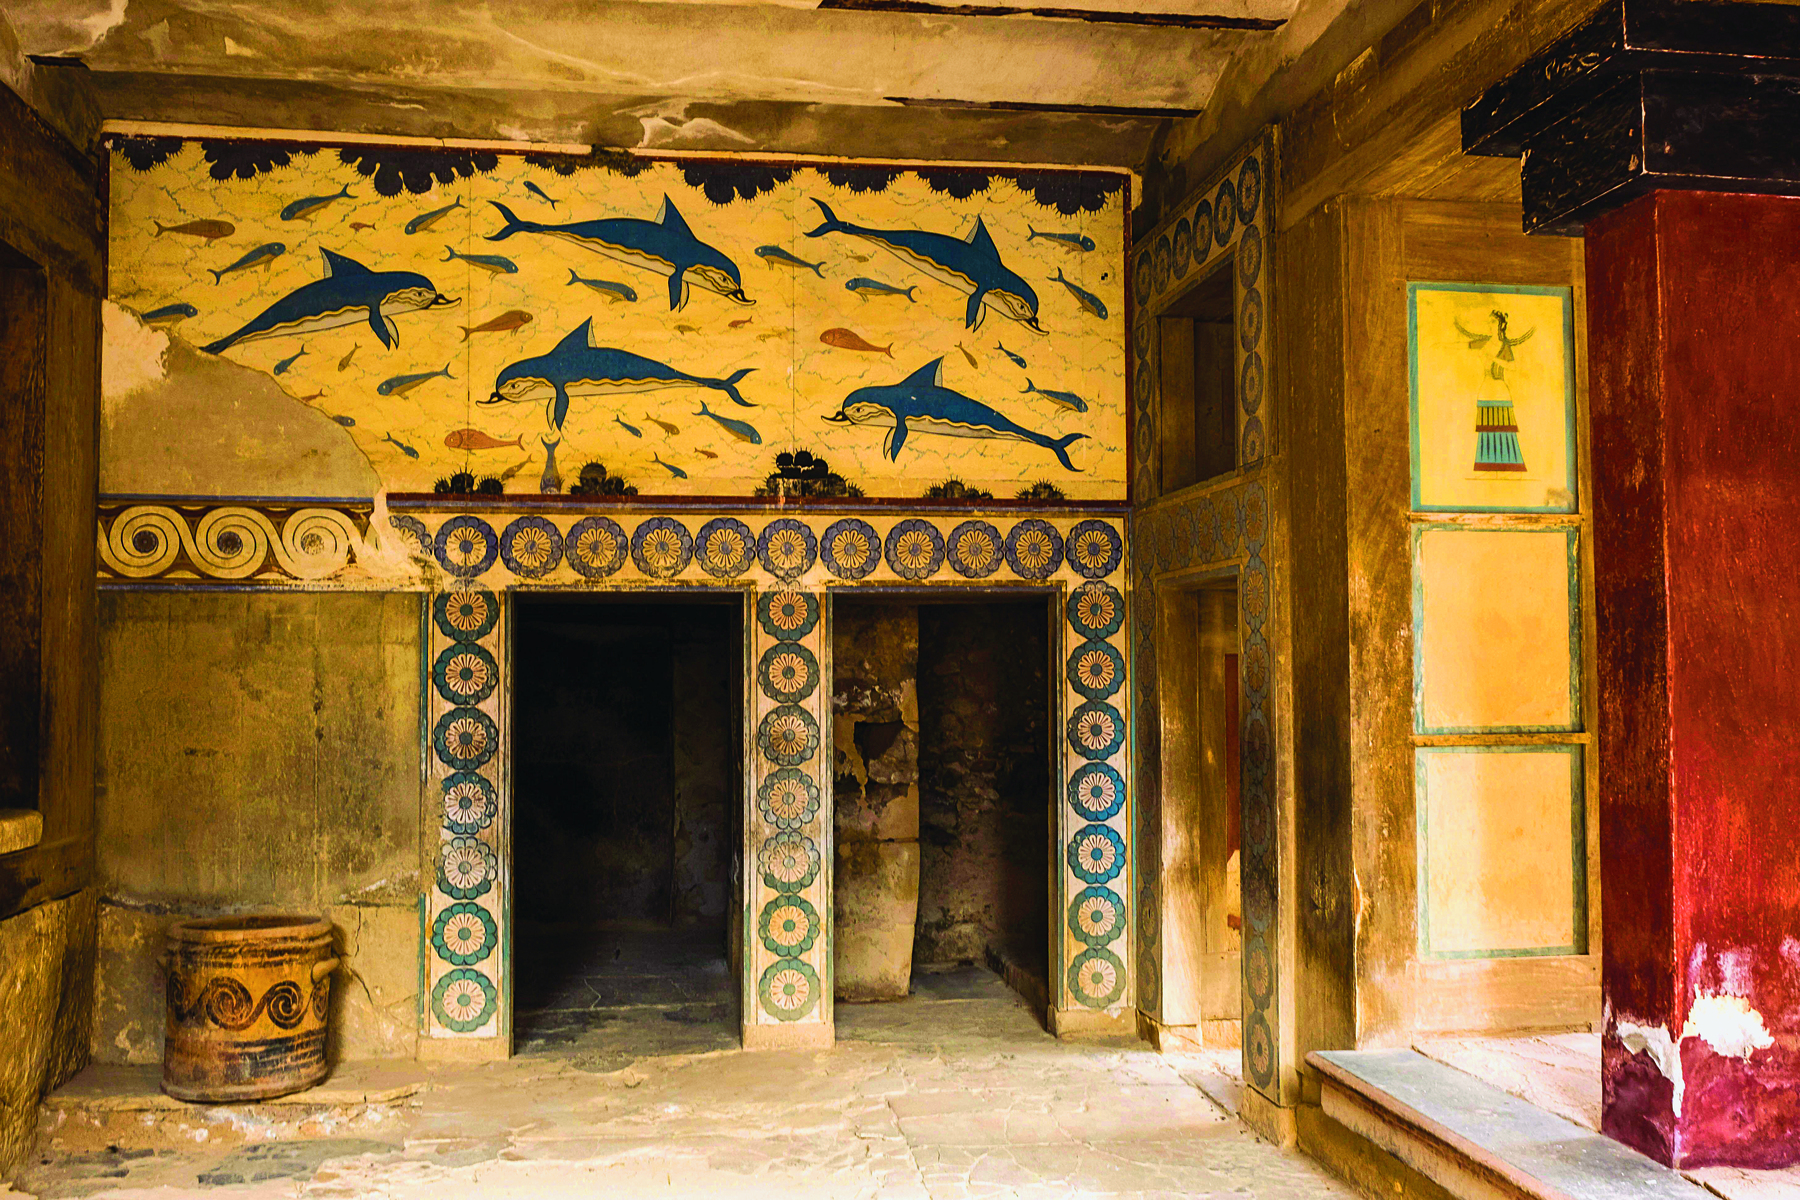 Fotografia. Destaque para a pintura de uma parede representando golfinhos azuis e outros peixes menores. A parte inferior esquerda da pintura está danificada. Abaixo da pintura principal, duas entradas decoradas com pinturas circulares azuis.